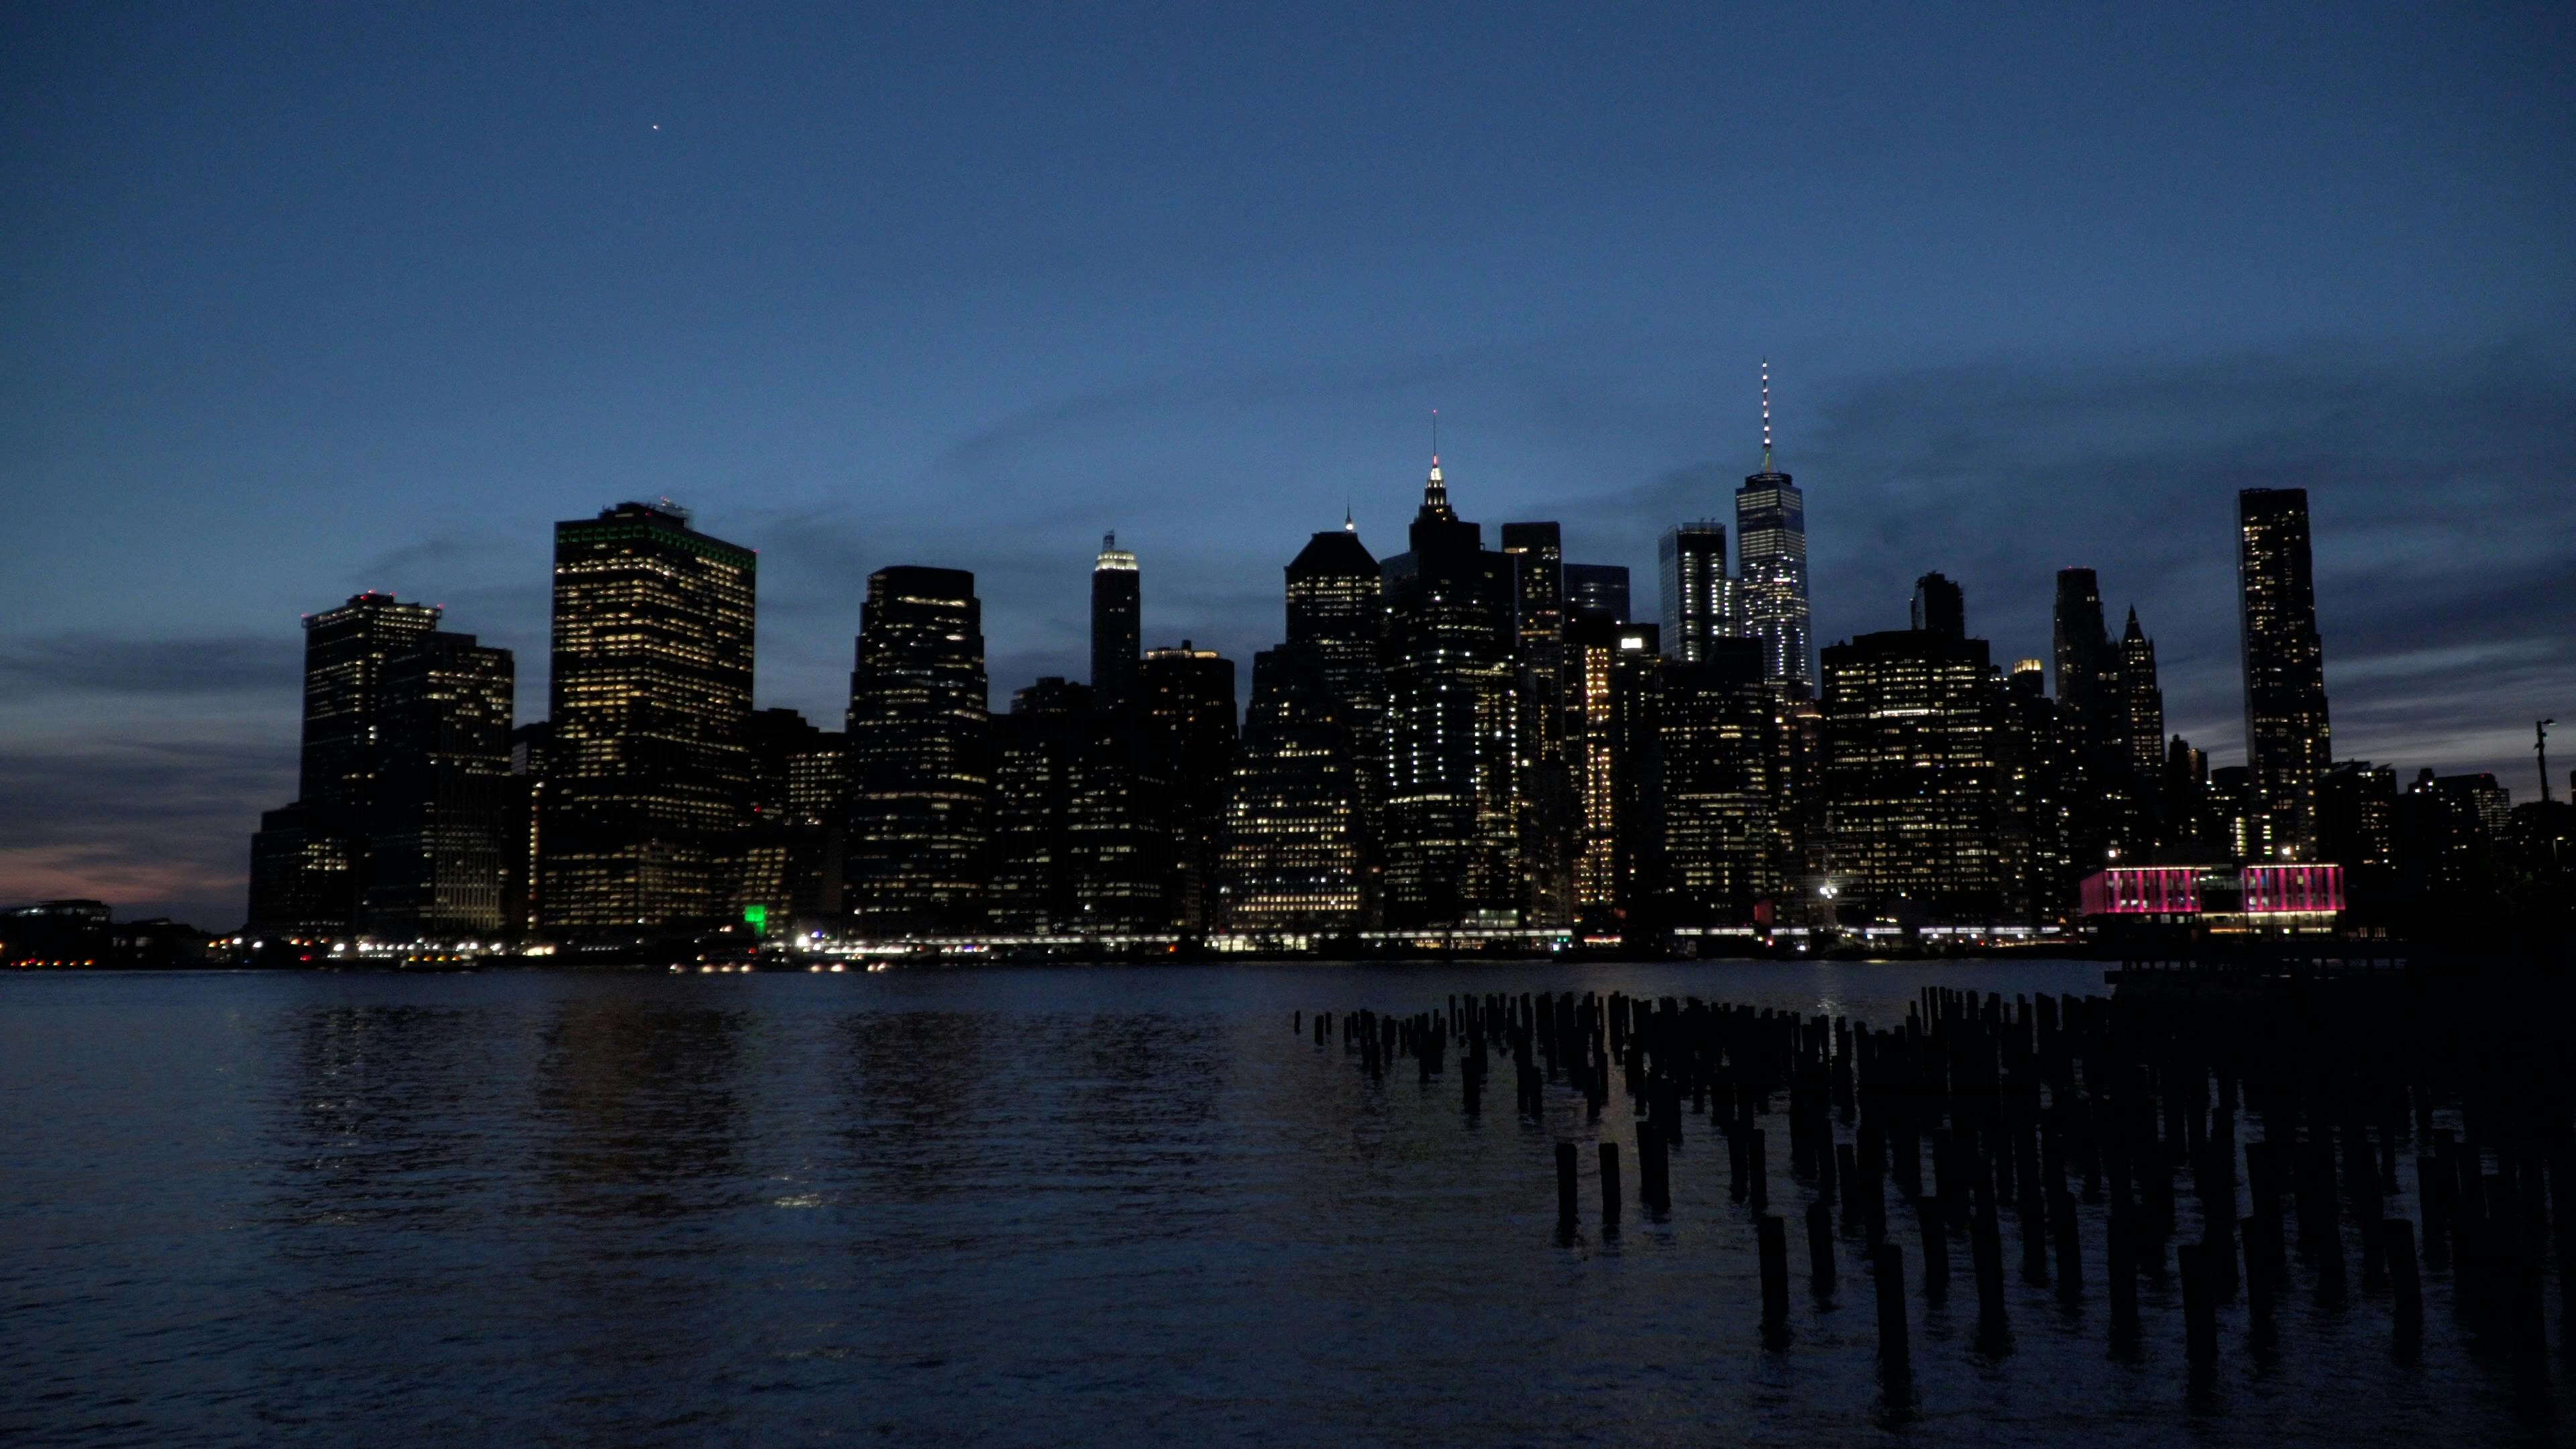 Free stock photo of Manhattan Night